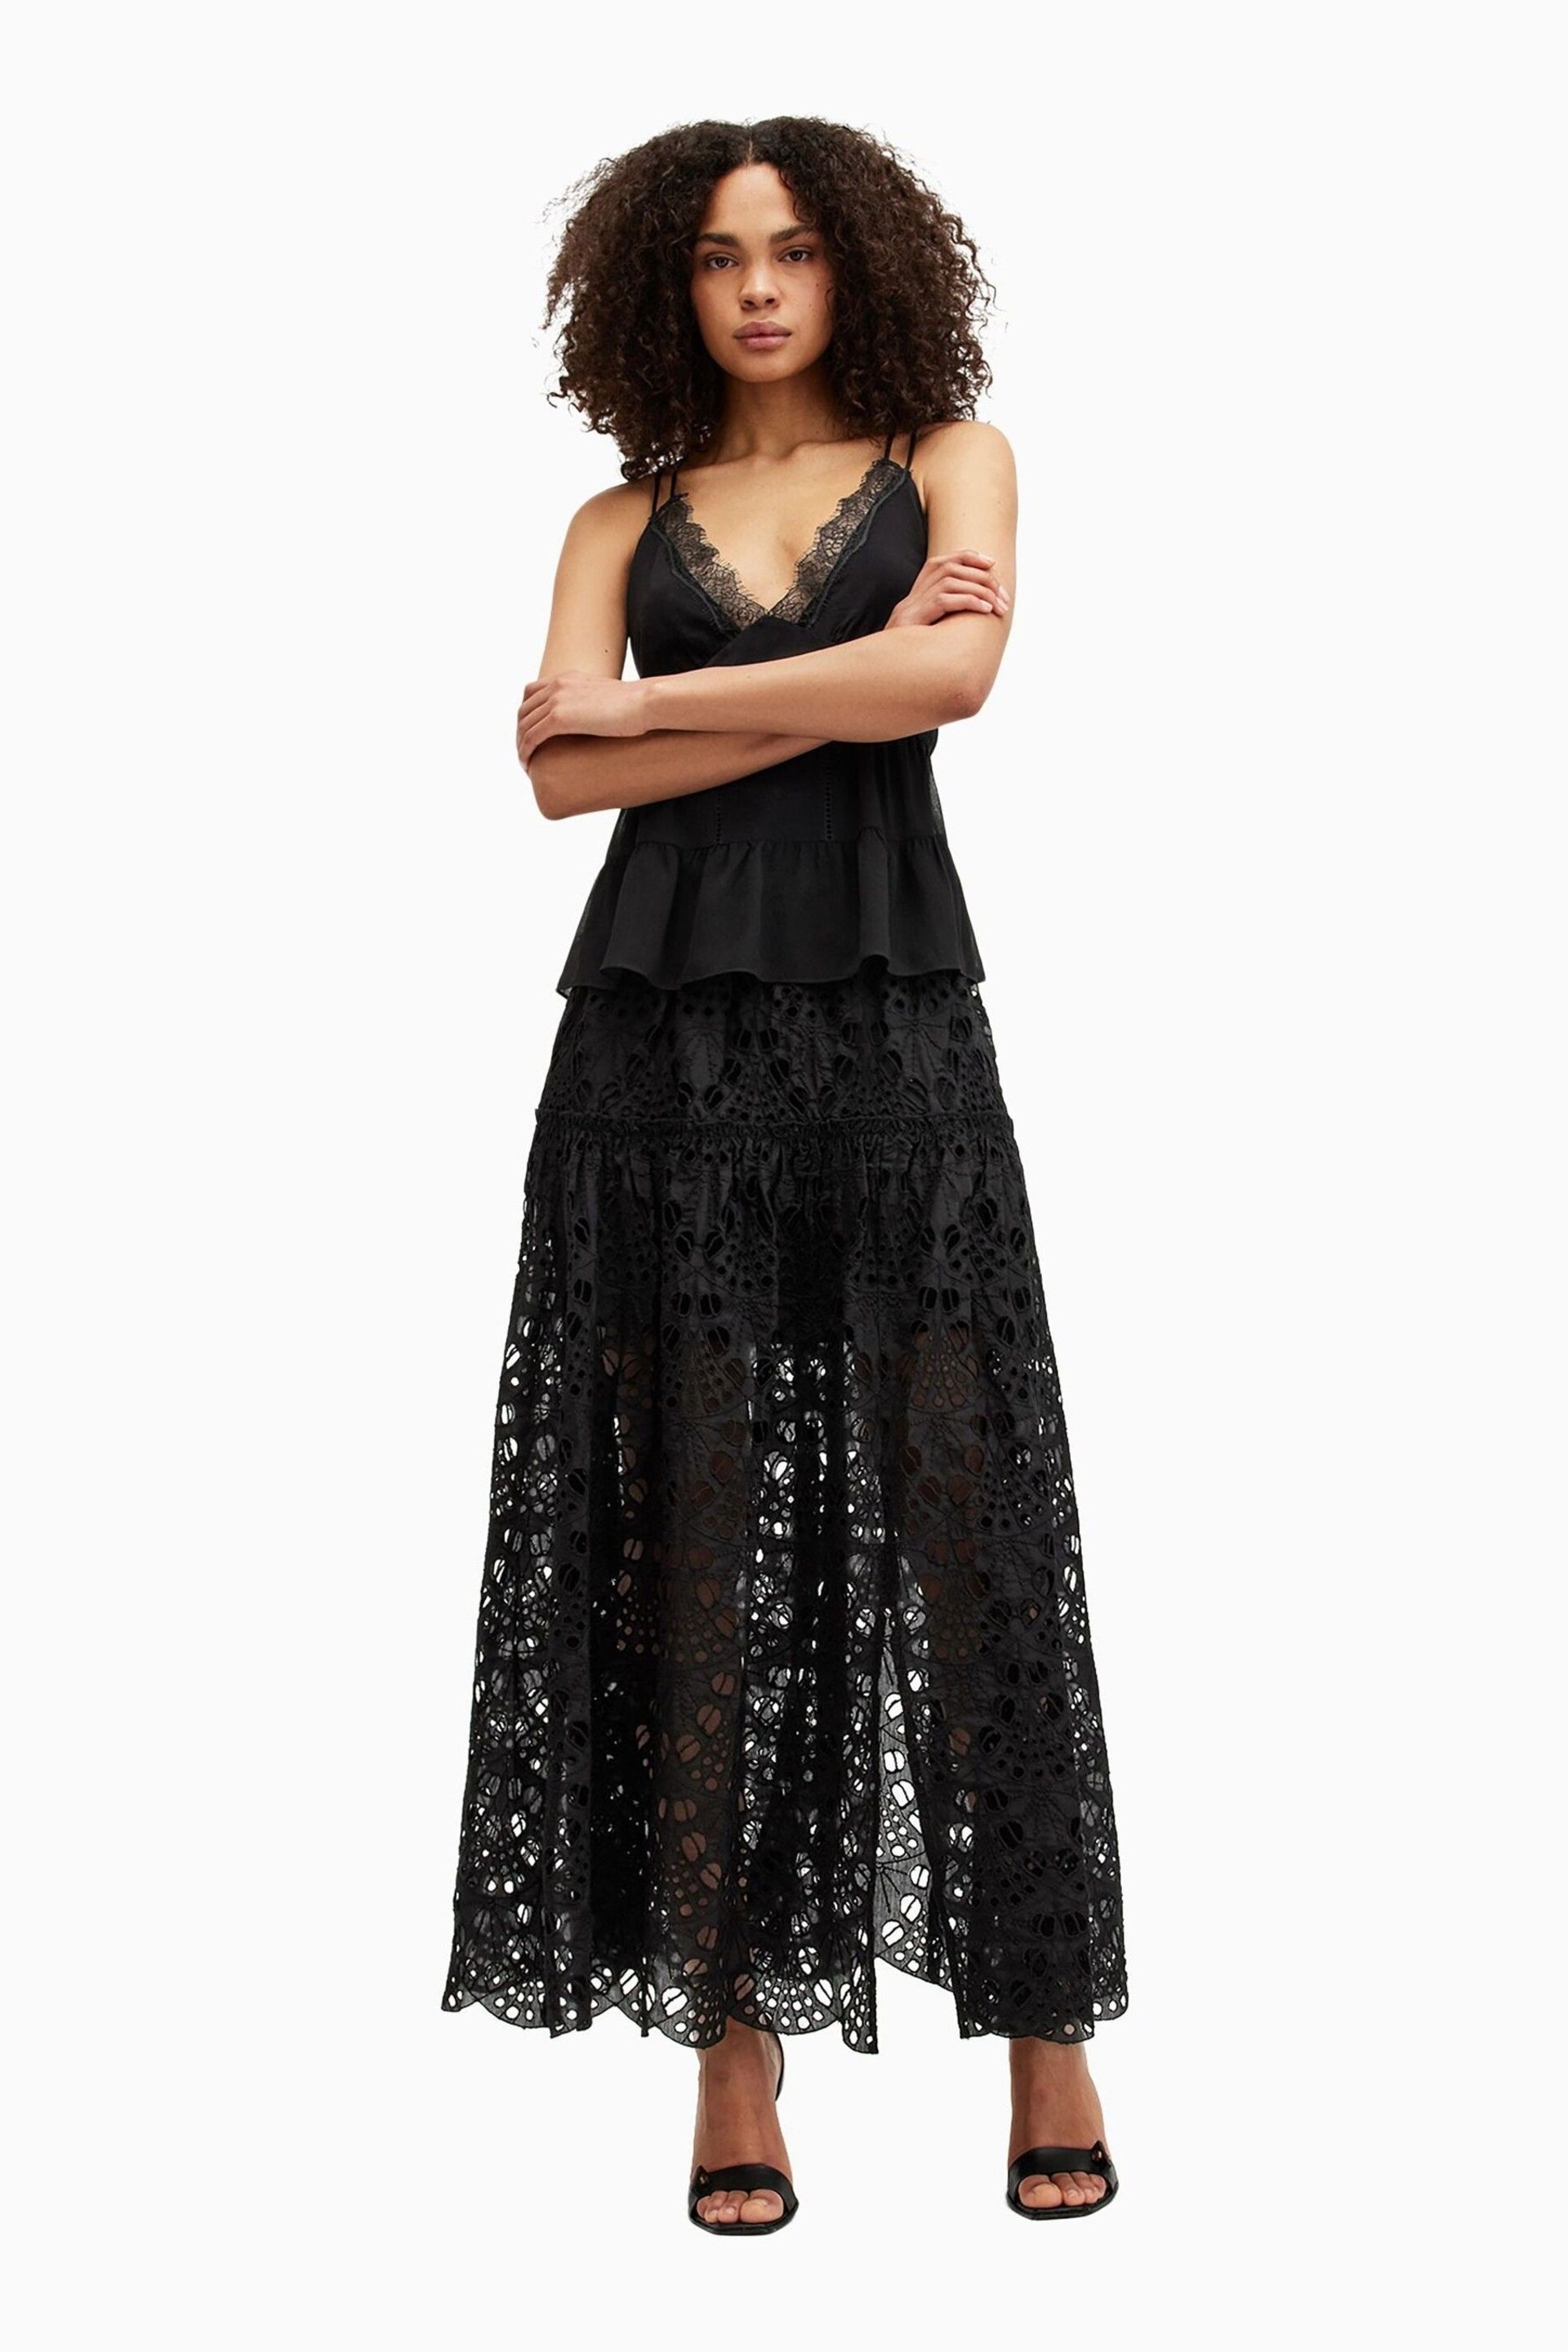 AllSaints Black Rosie Skirt - Image 4 of 6